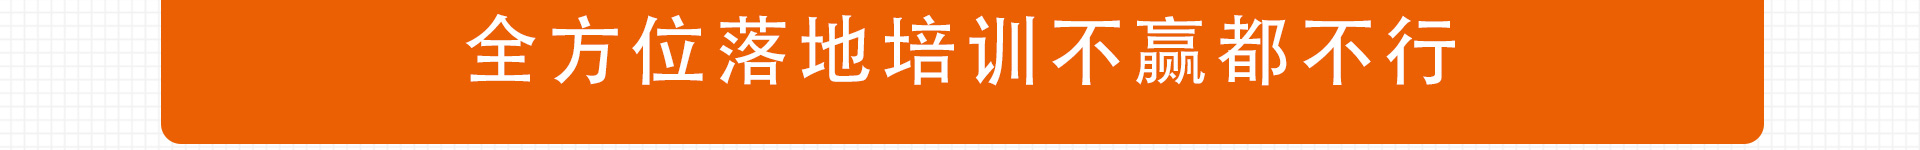 加盟网站zuizhong_150.jpg